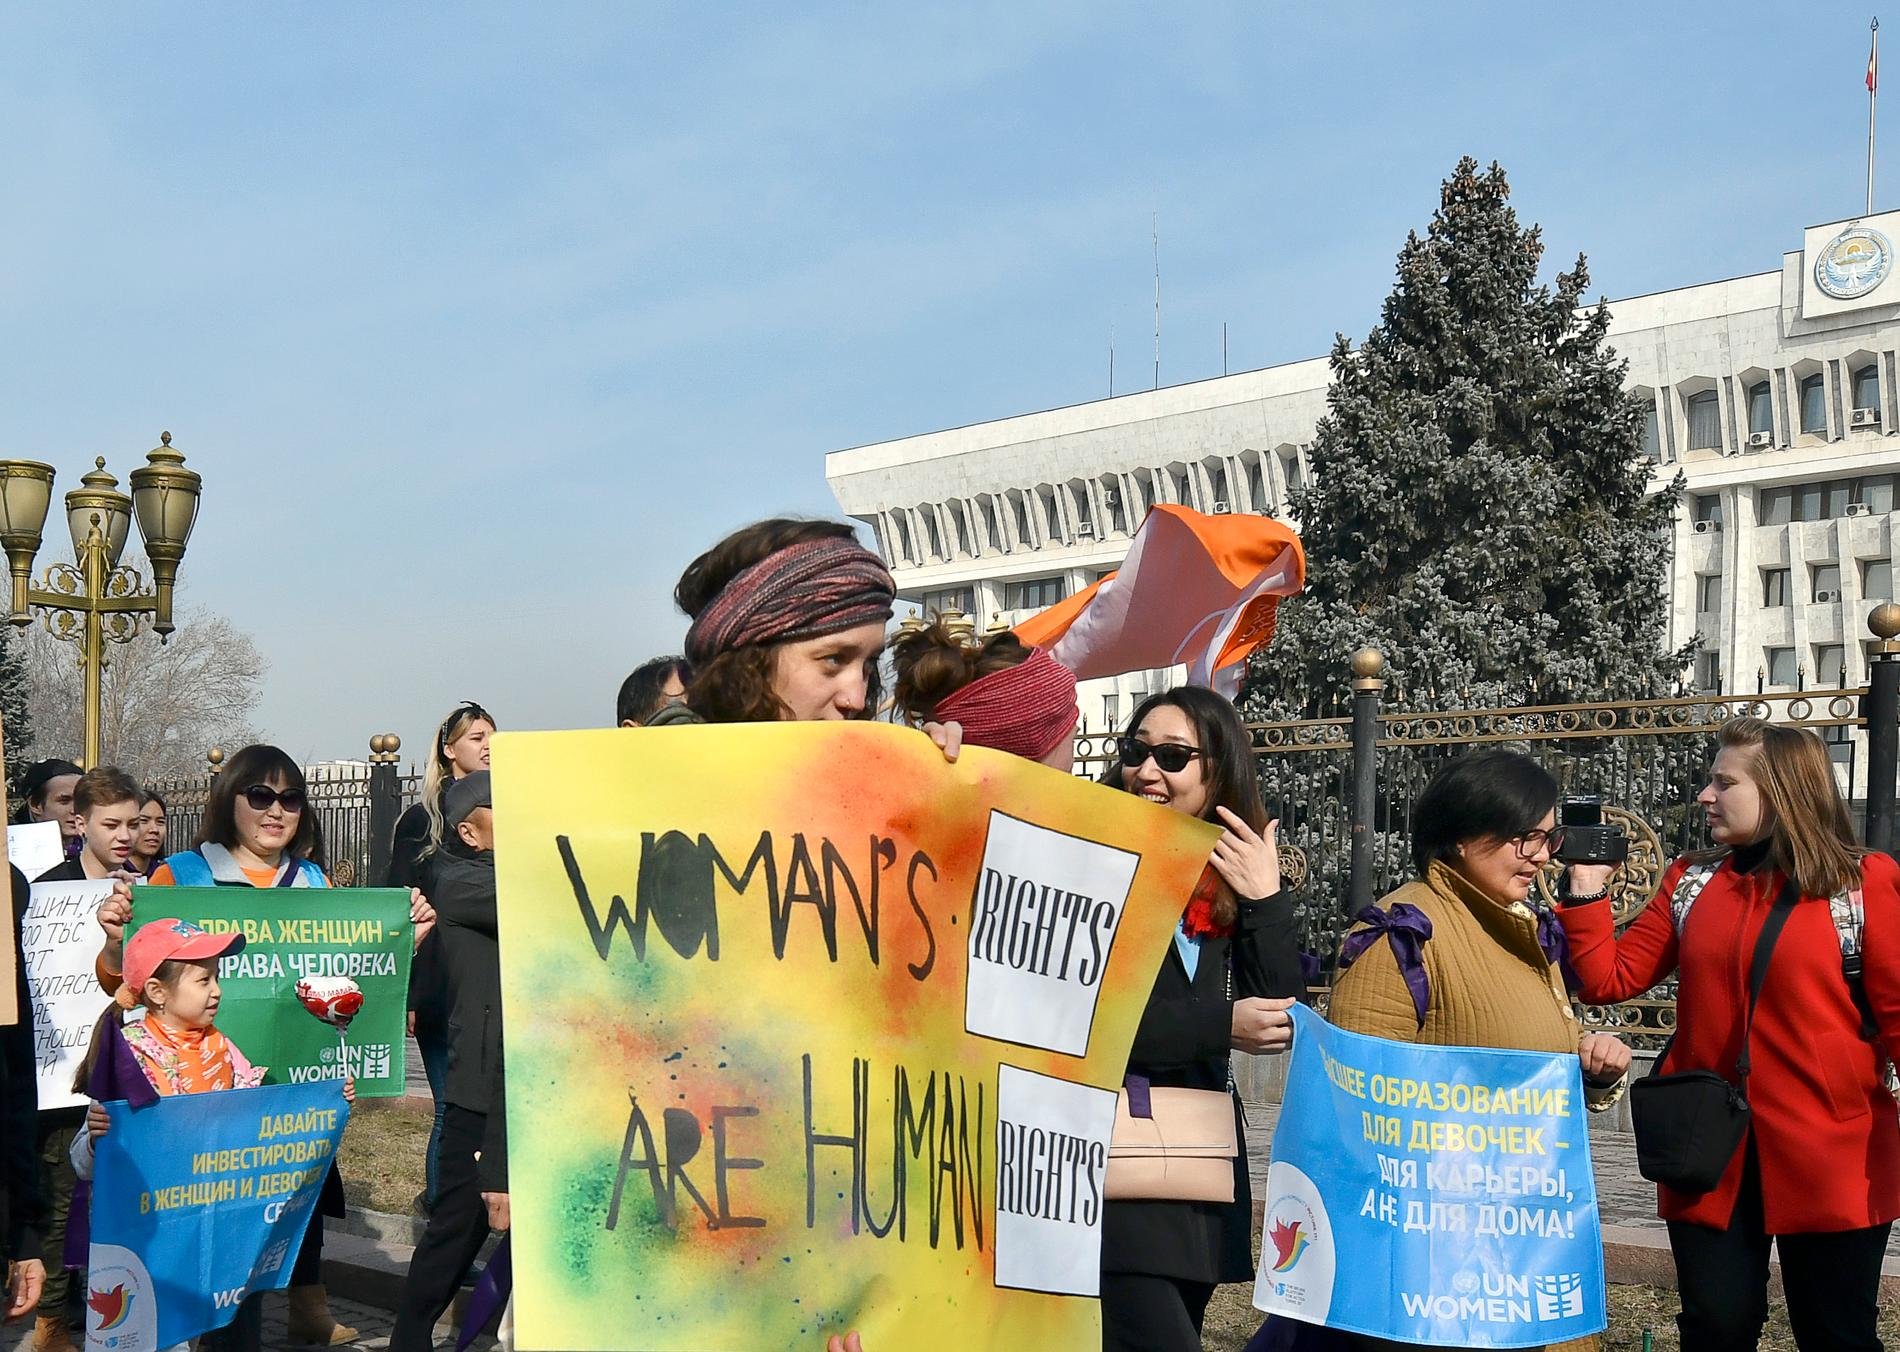 En historisk kombinerad pride- och kvinnorättsmarsch hölls i centralasiatiska Kirgizistan den 8 mars.